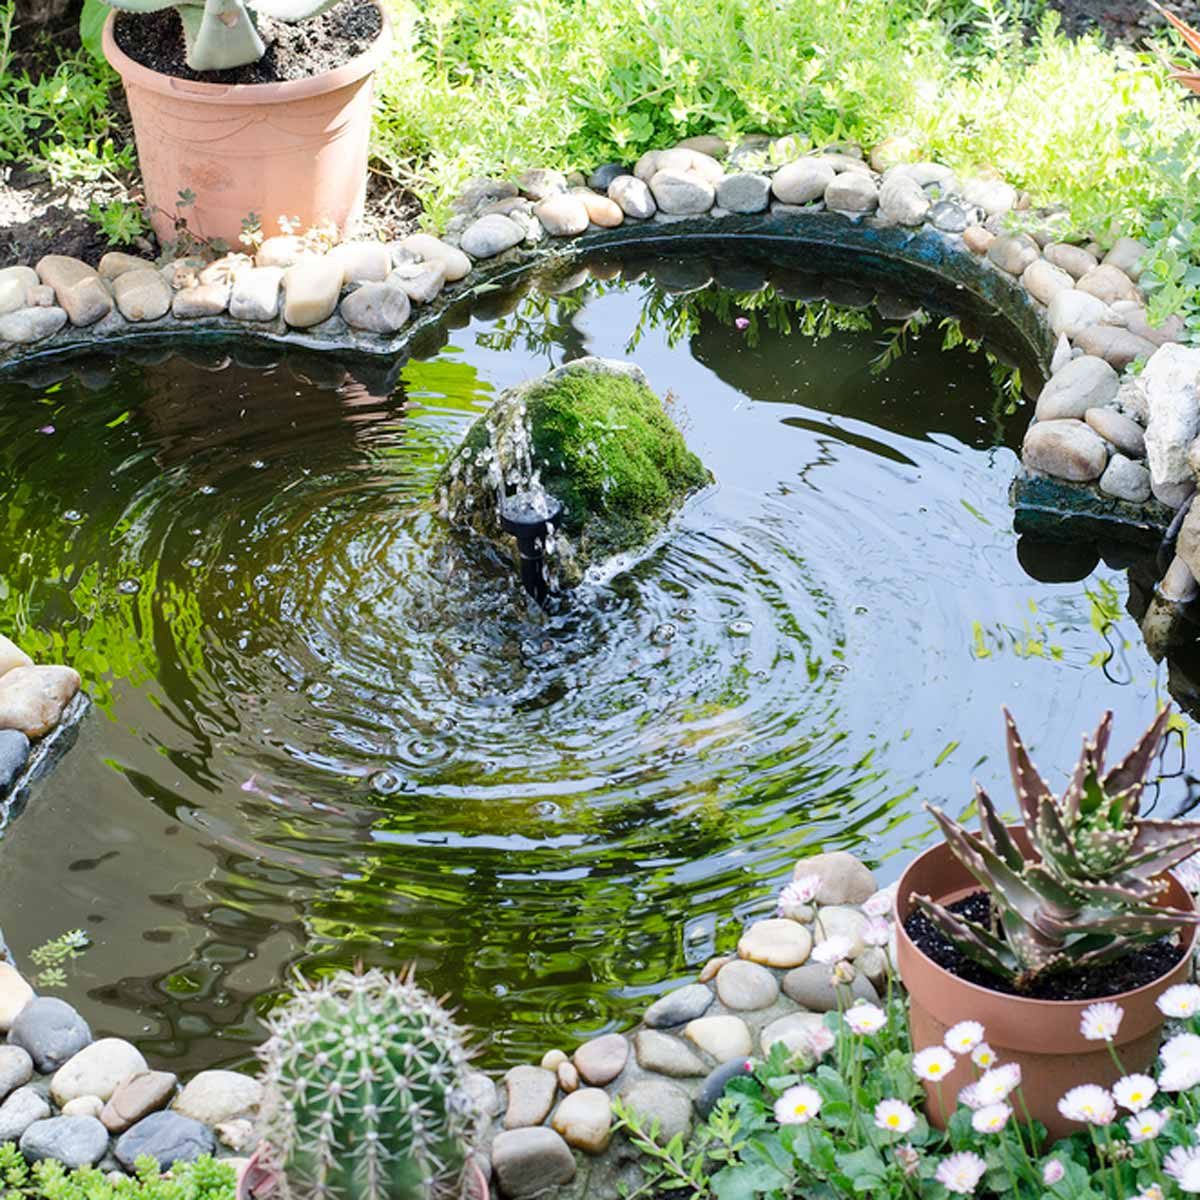 Zen Water Features for Outdoors